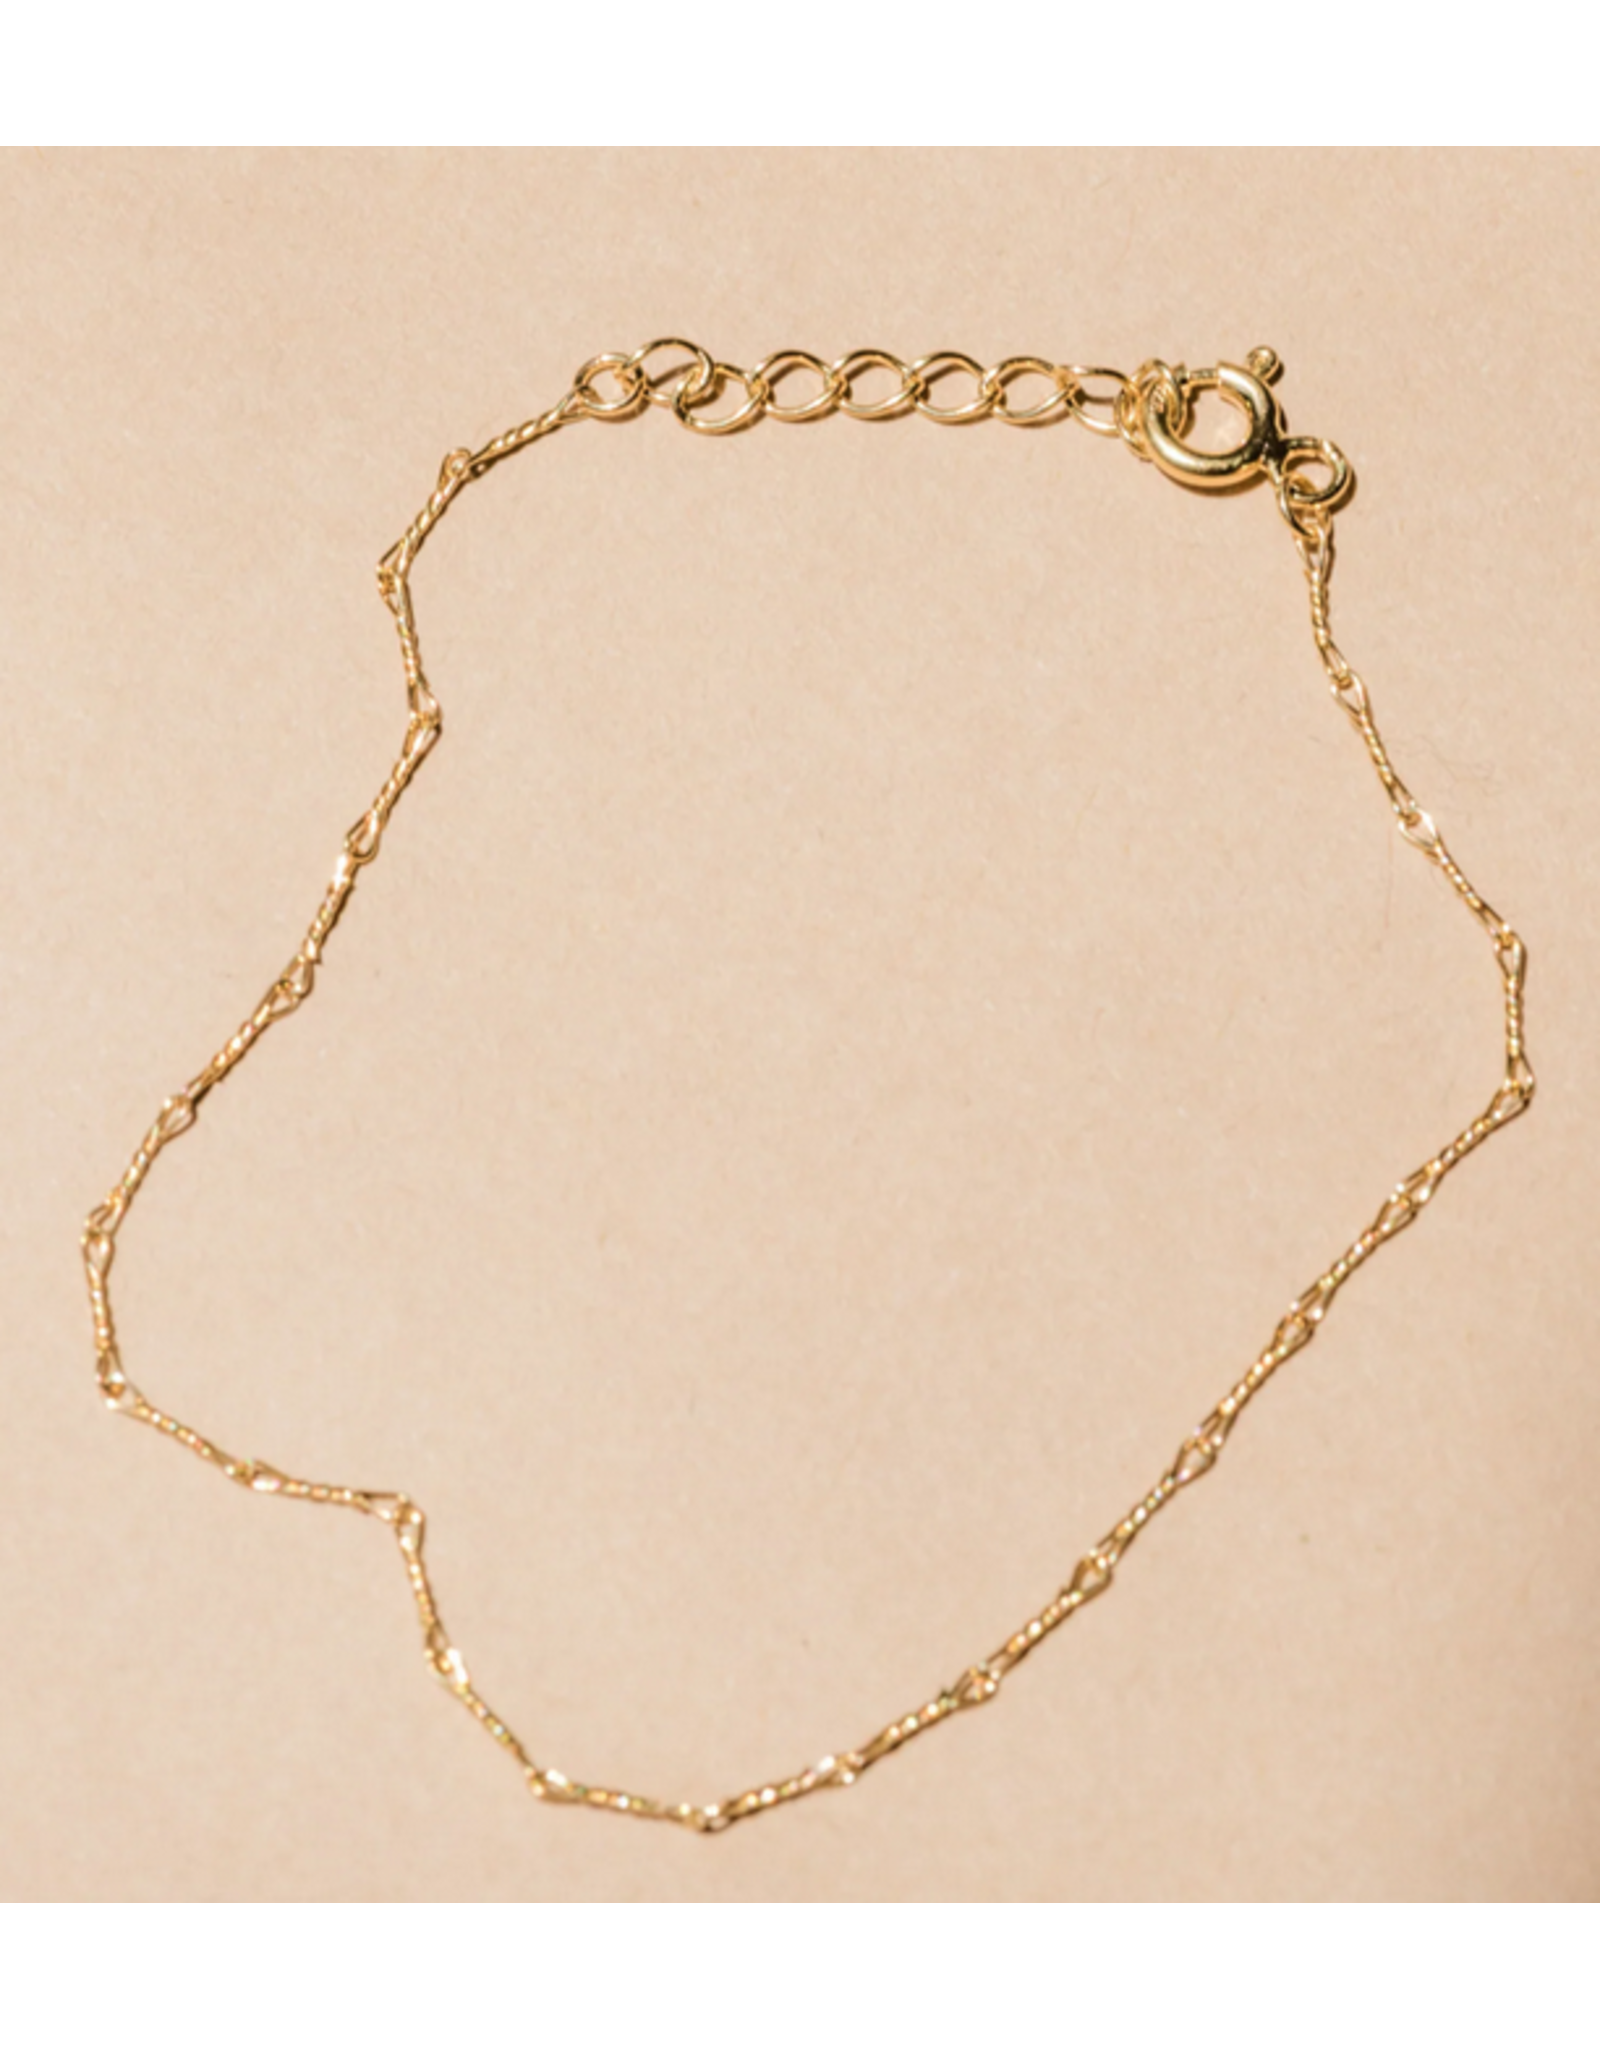 ABLE Able Twist Chain Bracelet